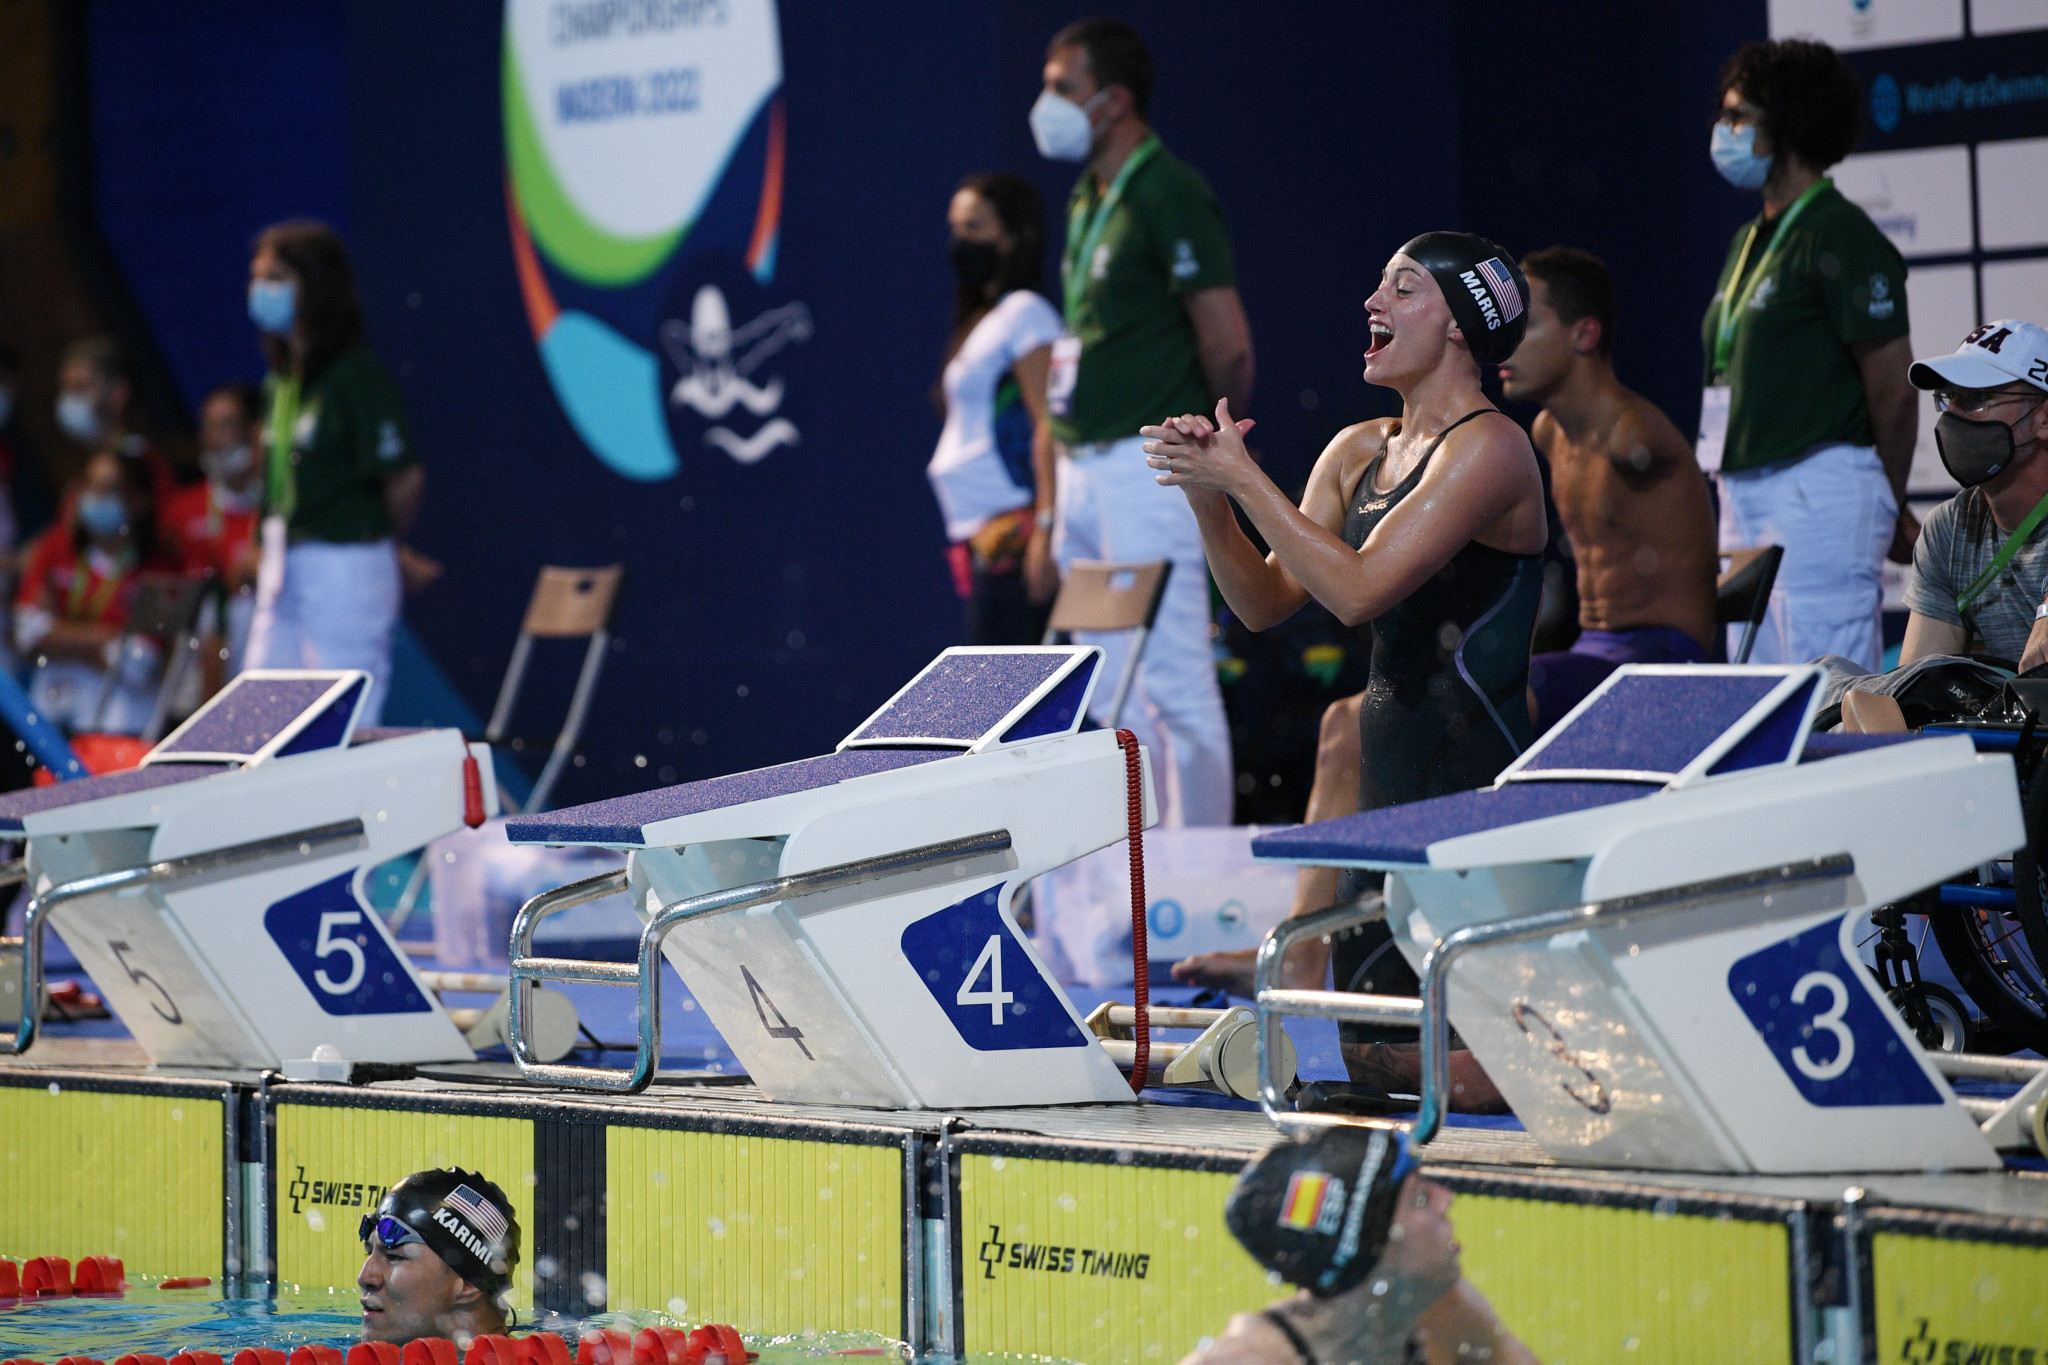 Americans set new relay record at World Para Swimming Championships